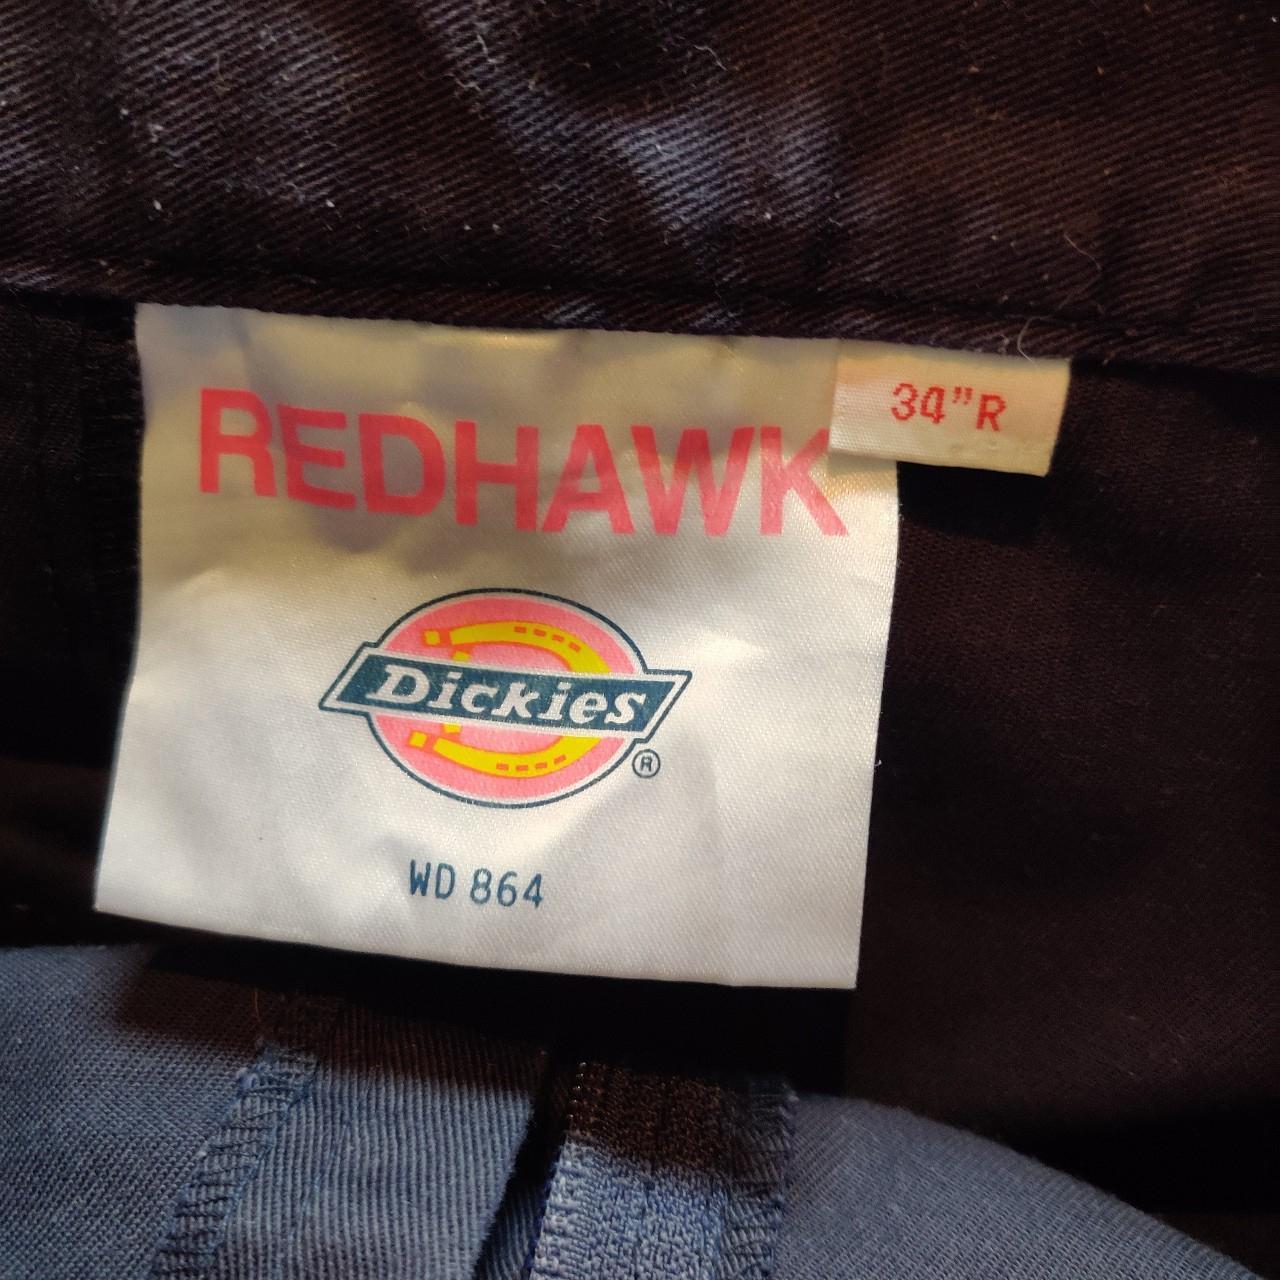 DICKIES Redhawk WD864 Mens Work Trousers Casual Black Navy